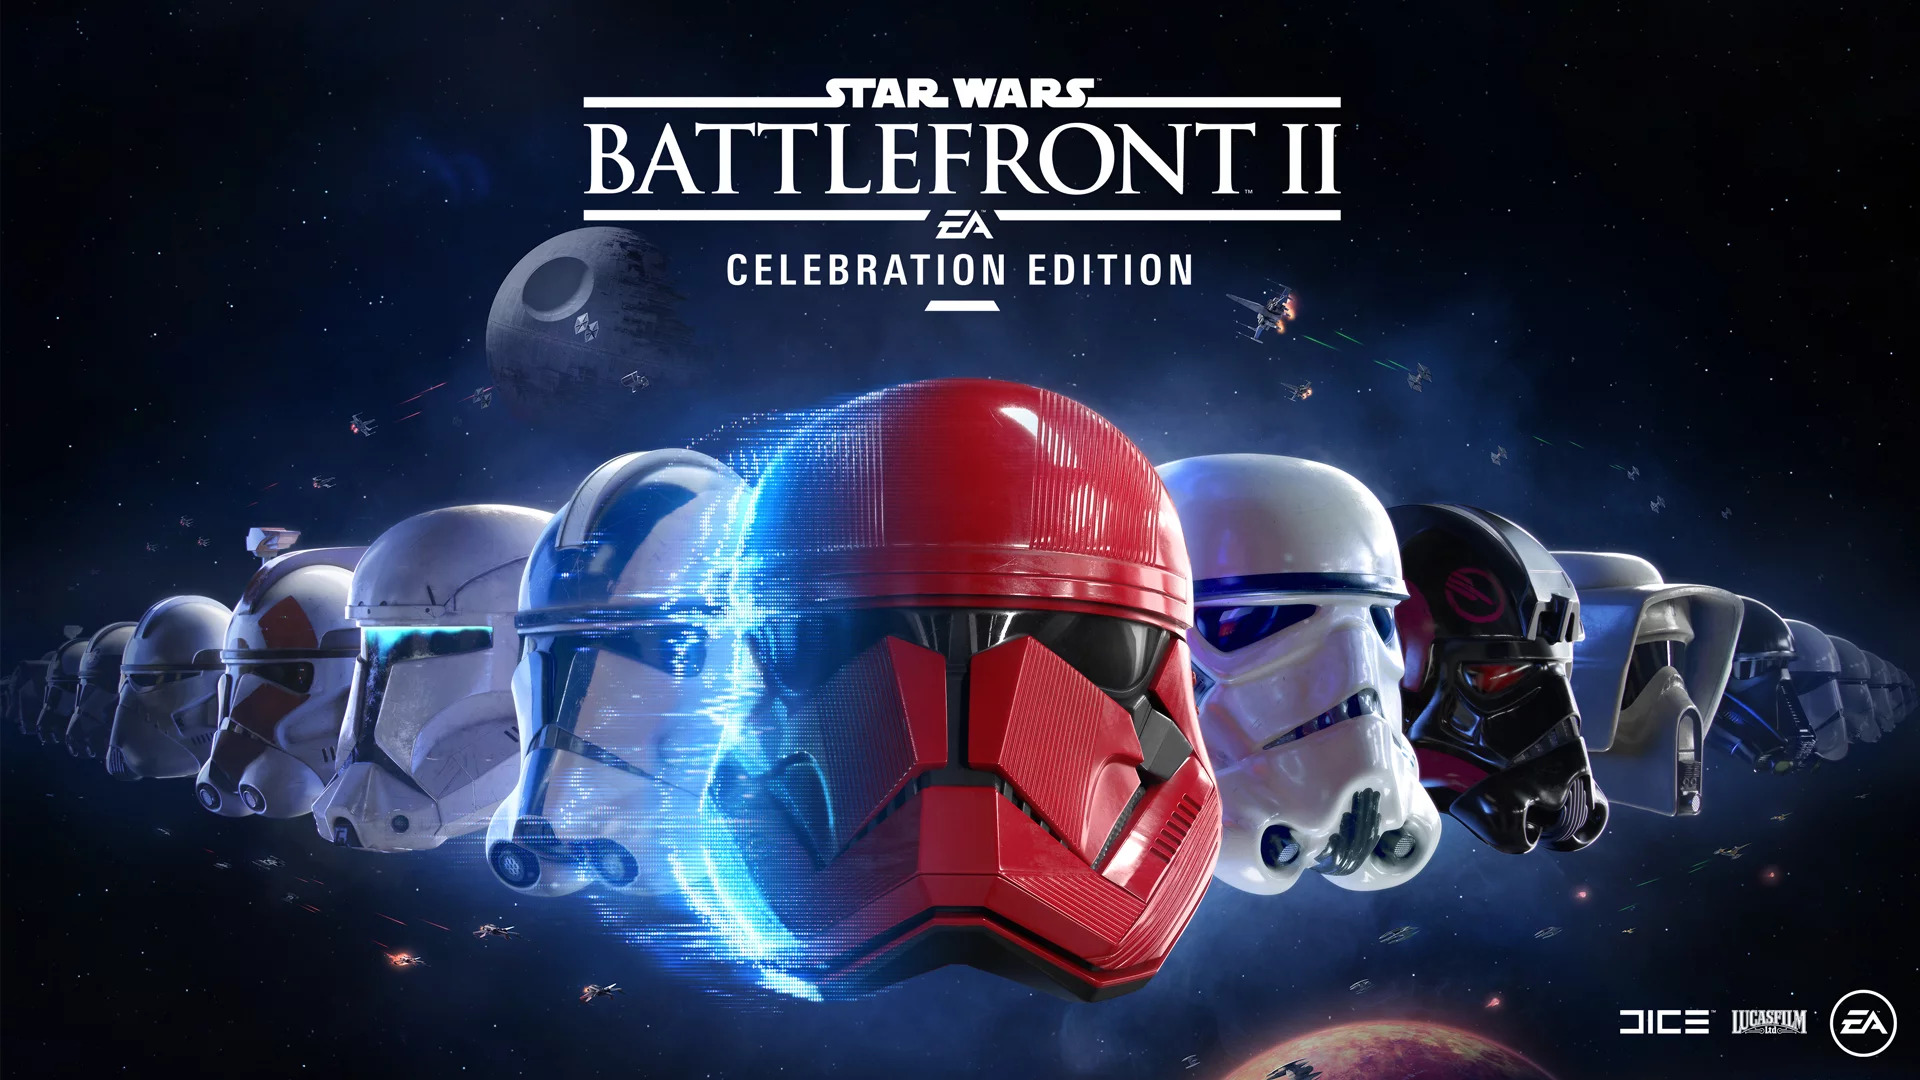 Star Wars Battlefront Ii Update Wars Battlefront 2 Celebration Edition